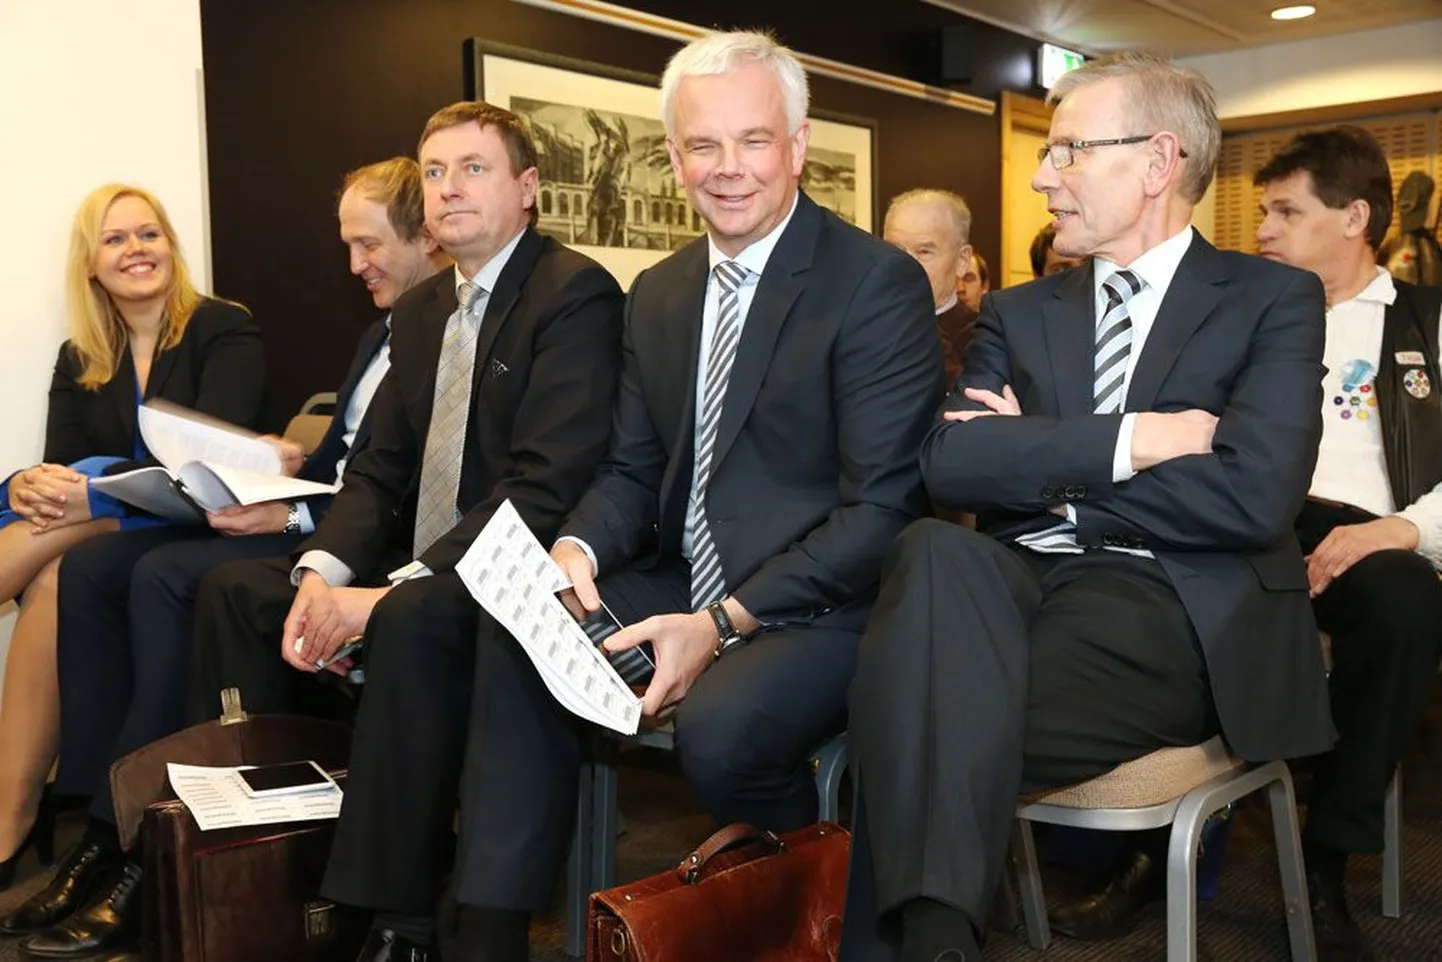 Tallinna Kaubamaja aktsionäride koosolekul osalesid teiste seas suuromanikud nõukogu esimees Jüri Käo (vasakul) ja nõukogu liige Enn Kunila.